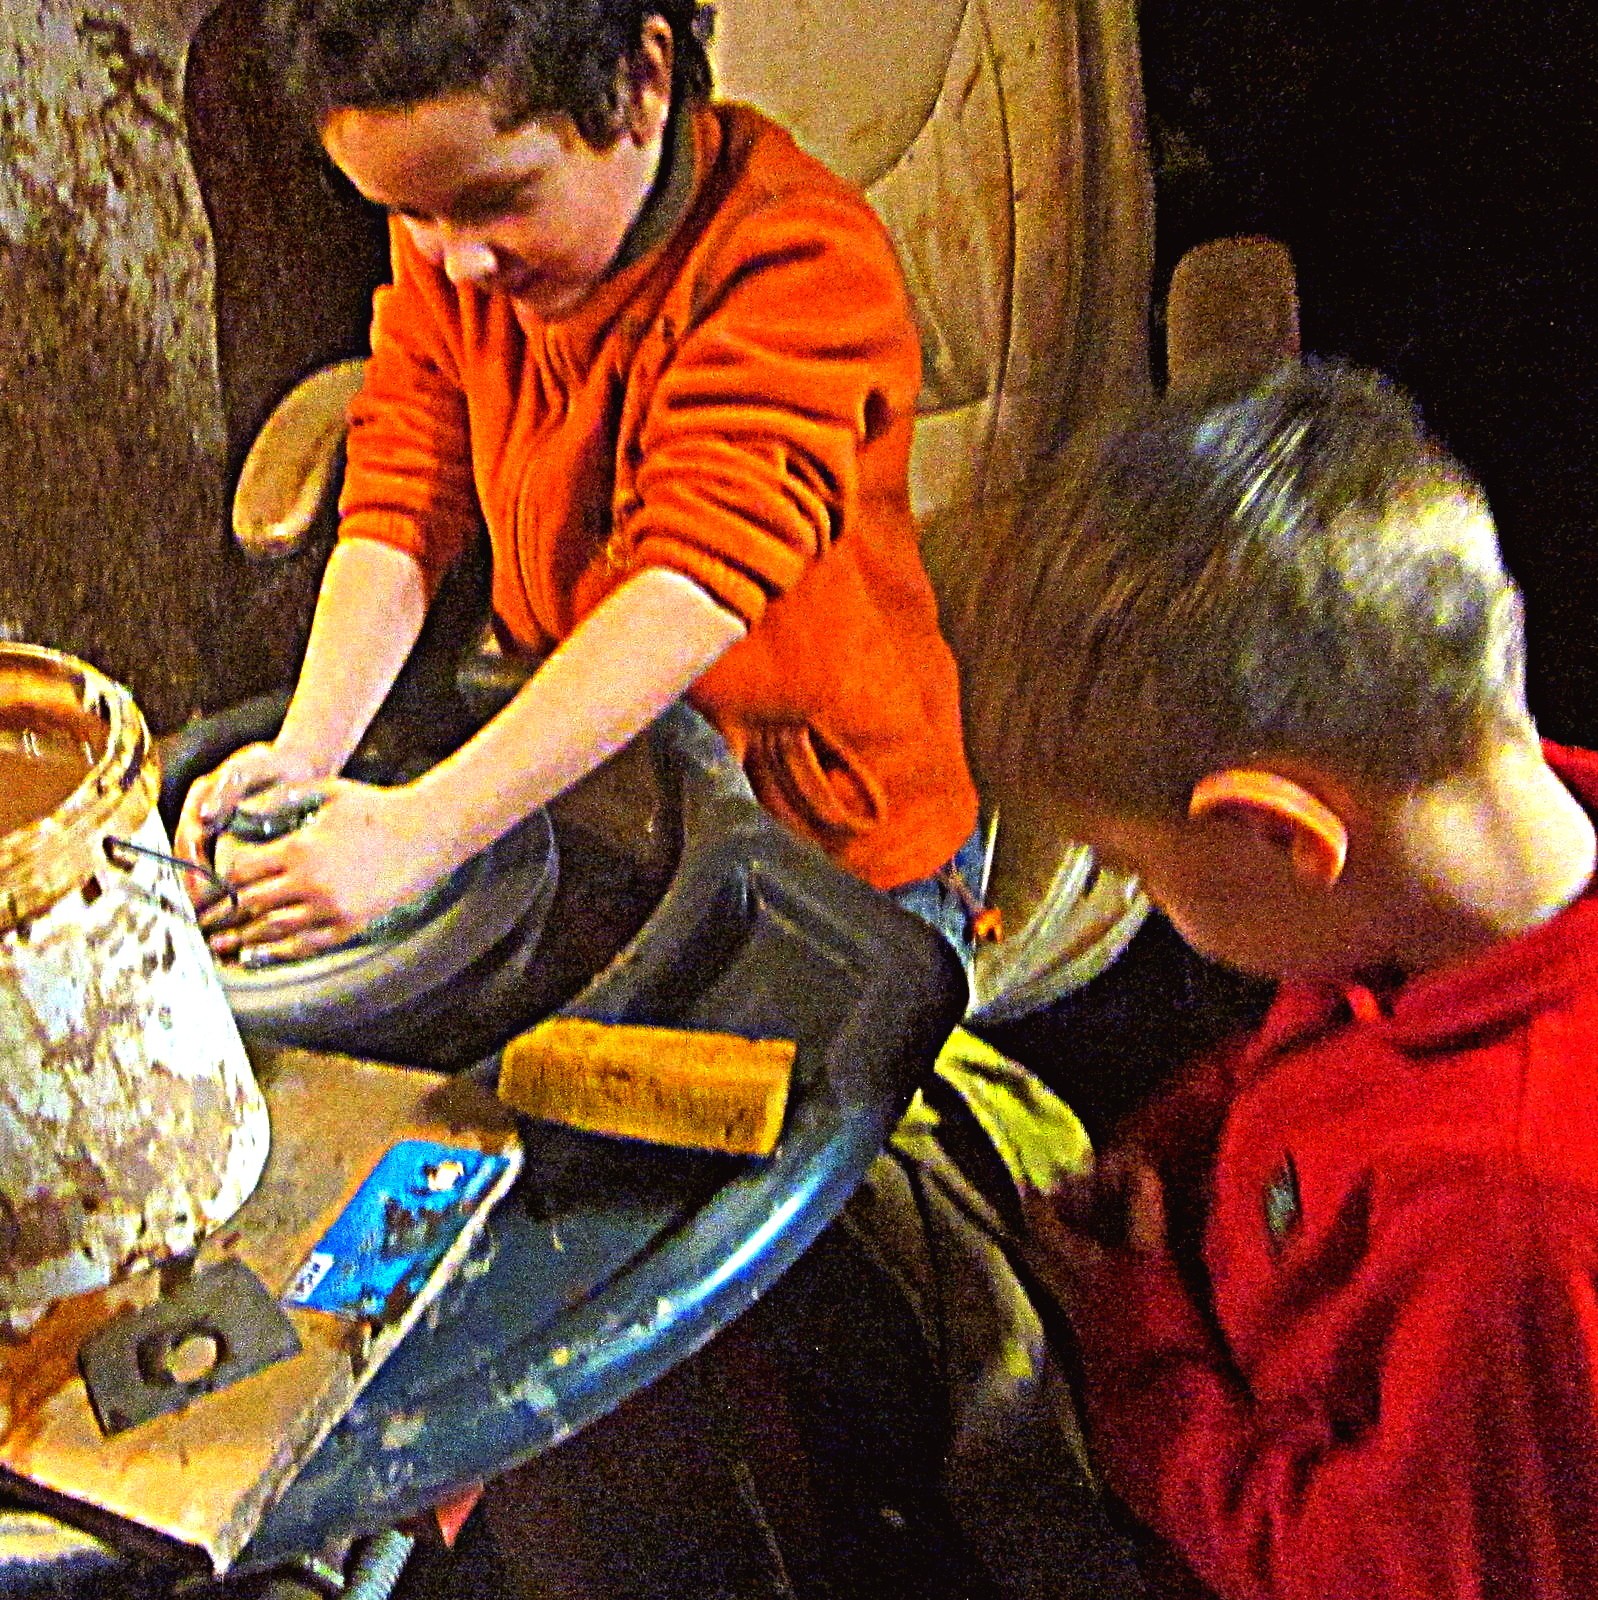 Dárkový poukaz na odpolední minikurz keramiky a hrnčířství - točí celá rodina v hodnotě 1500 Kč